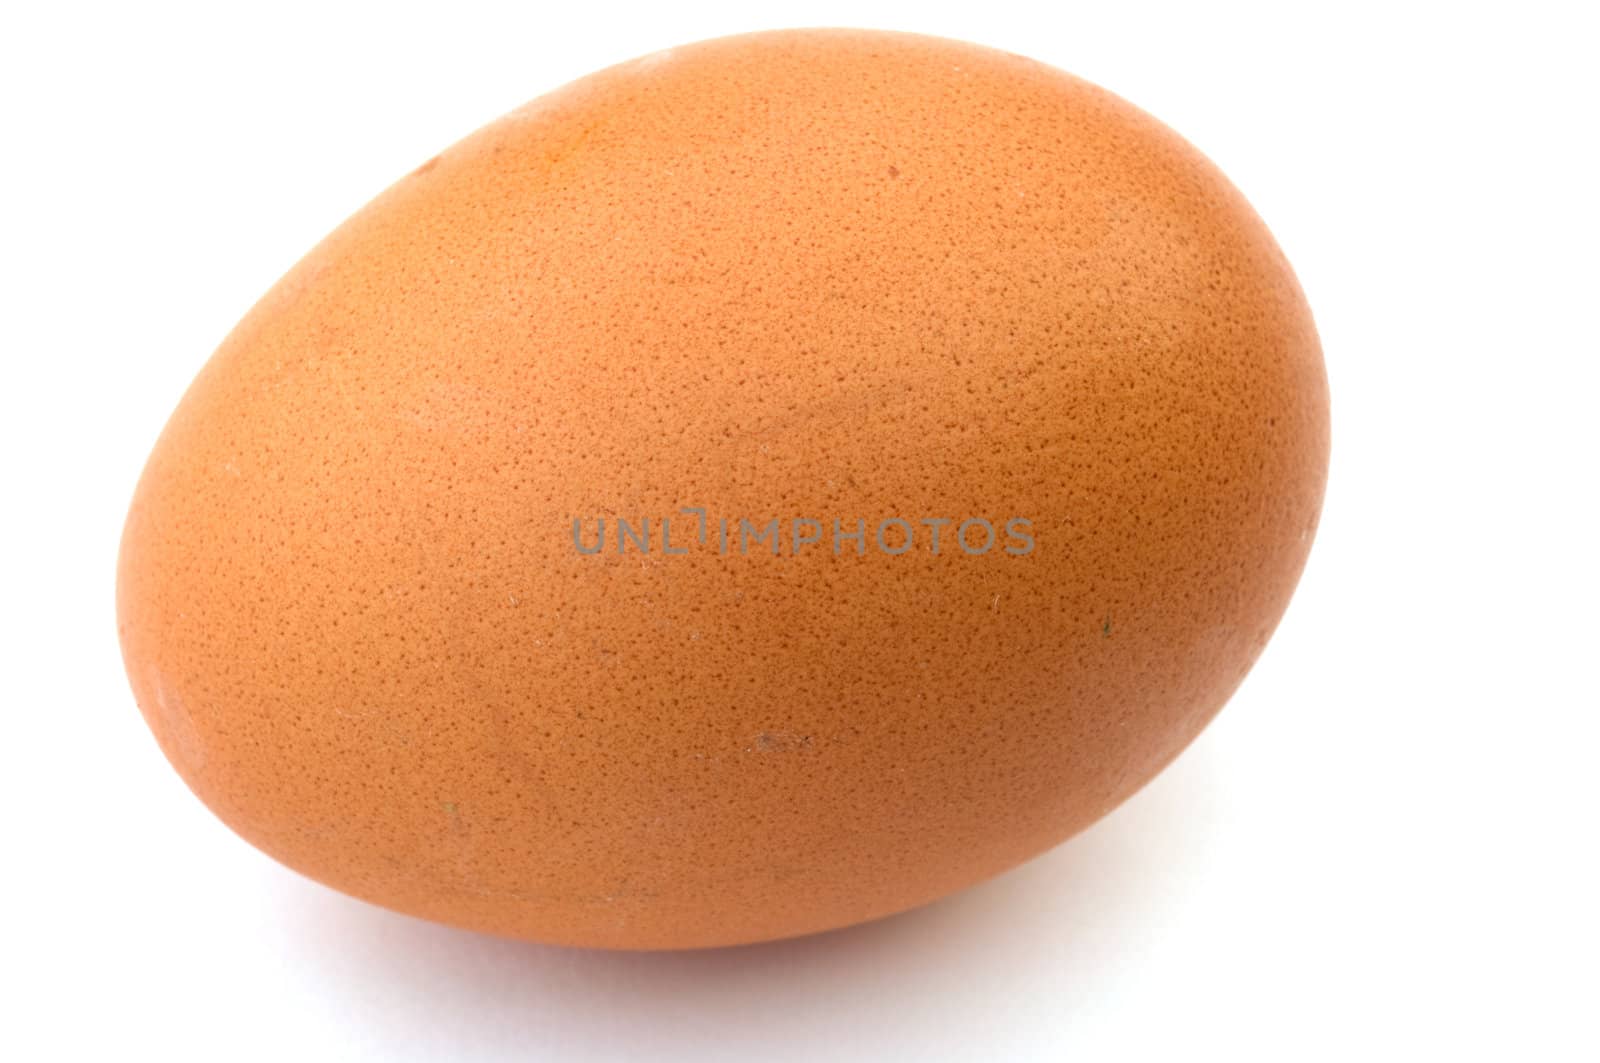 Chicken egg. by kromeshnik